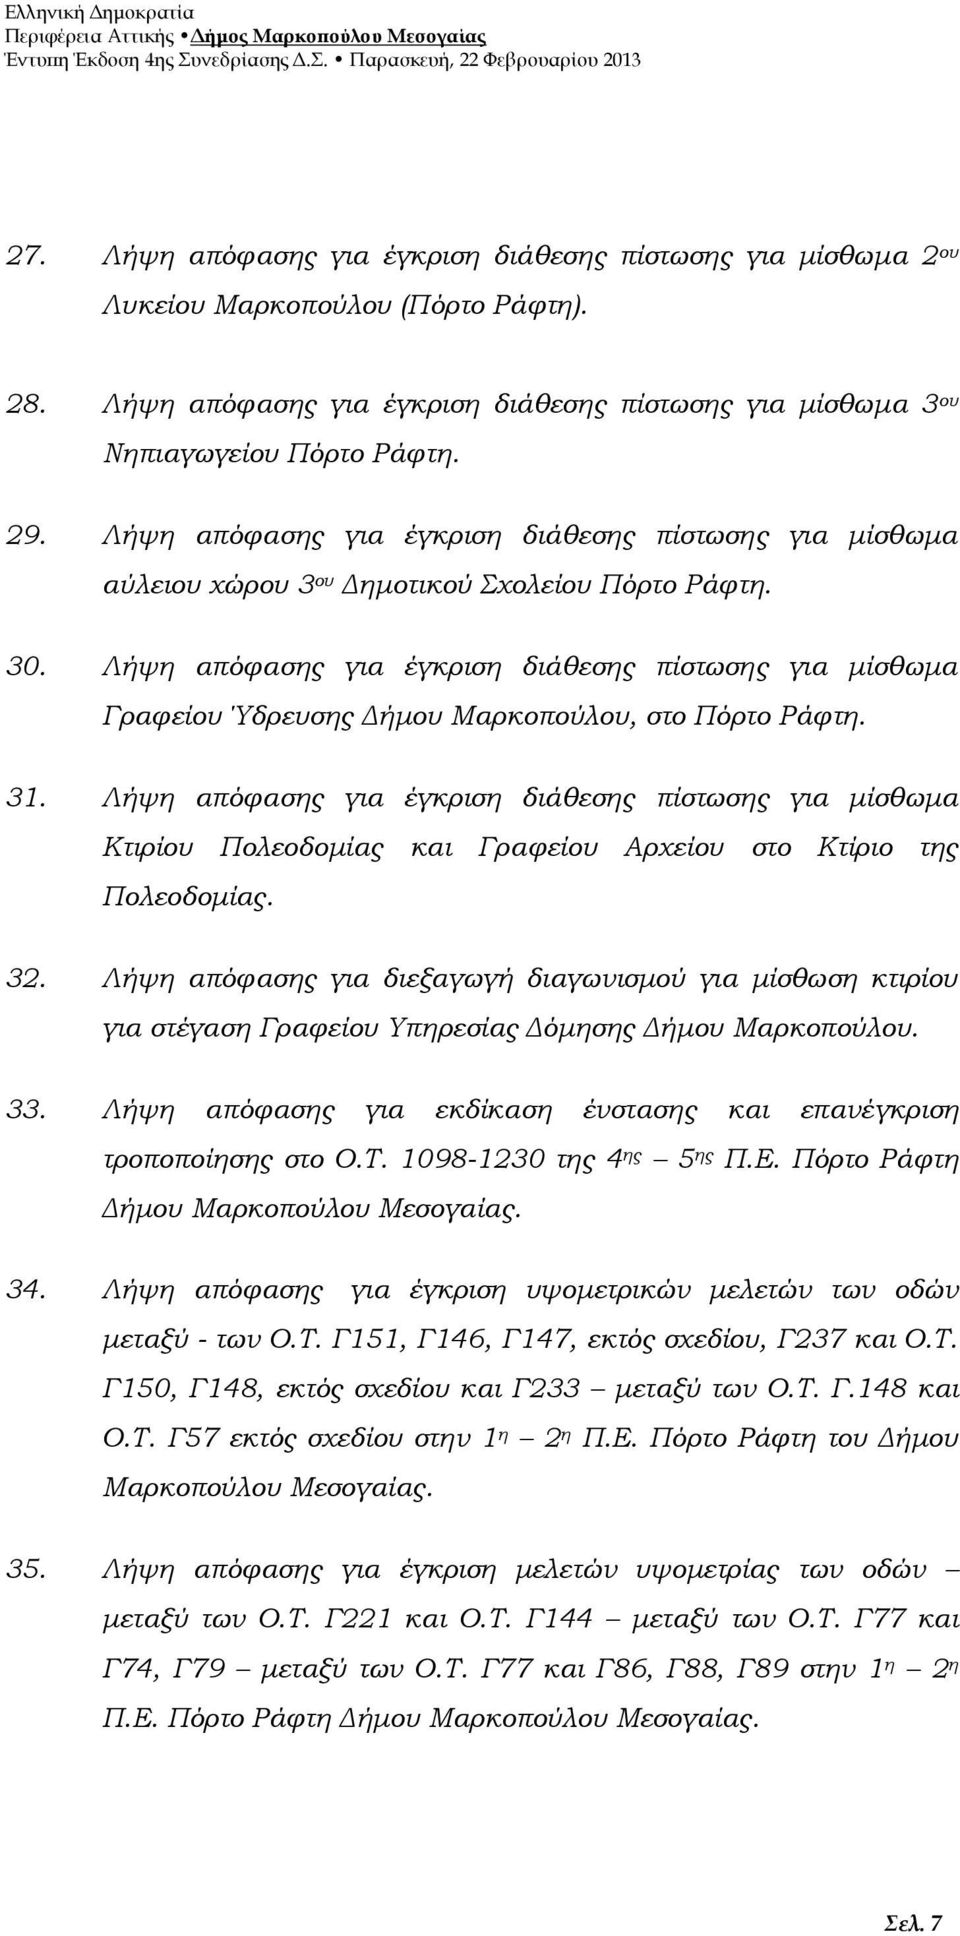 Λήψη απόφασης για έγκριση διάθεσης πίστωσης για μίσθωμα Γραφείου Ύδρευσης Δήμου Μαρκοπούλου, στο Πόρτο Ράφτη. 31.